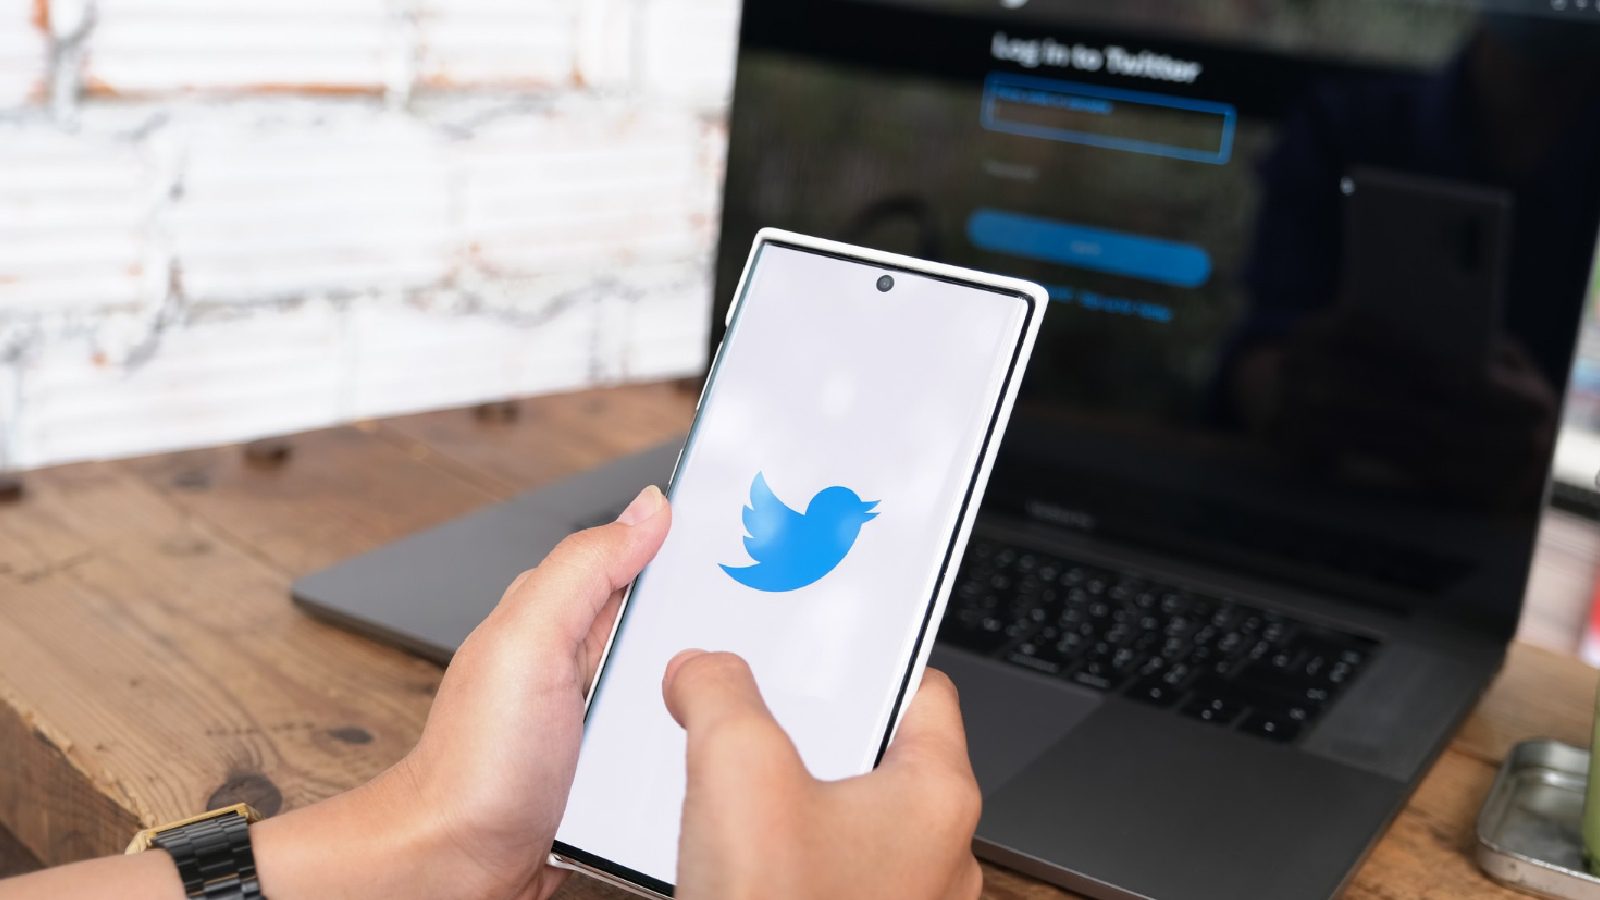 Twitter Планирует внедрить новый дизайн значка «Проверено» для проверенных учетных записей.